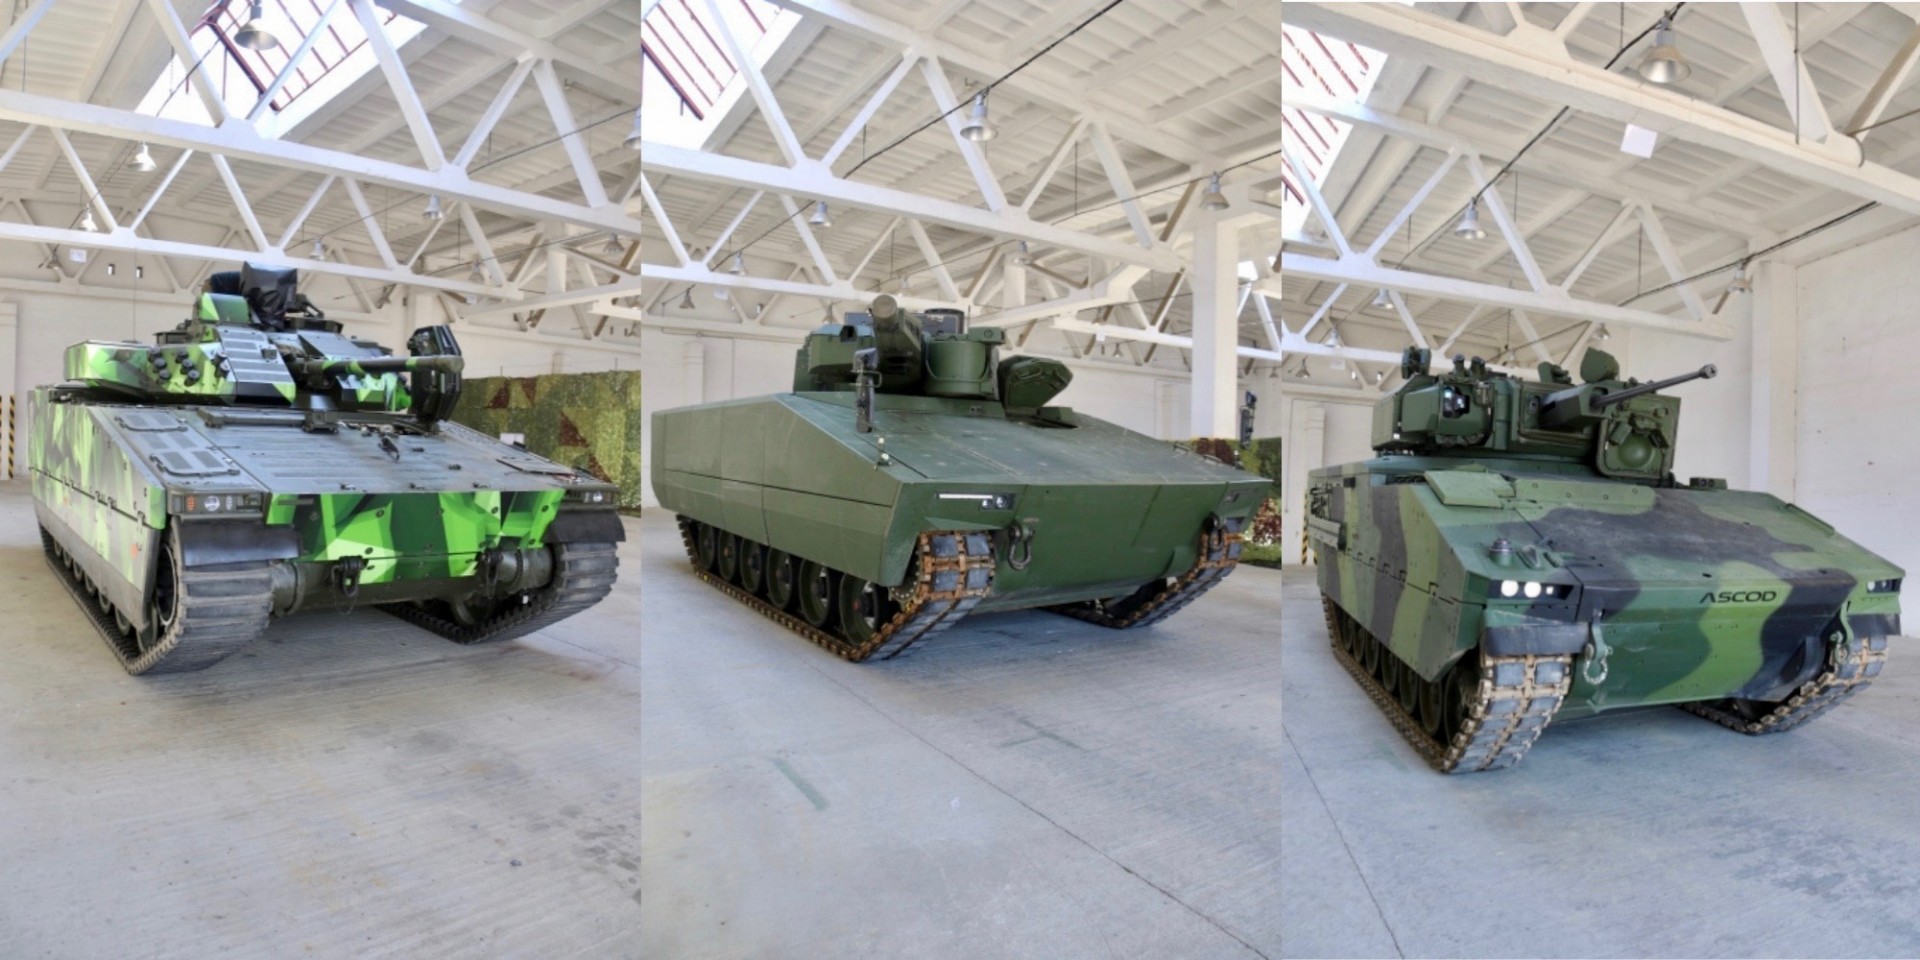 CV90, Lynx i ASCOD gotowe do testów. Fot. army.cz